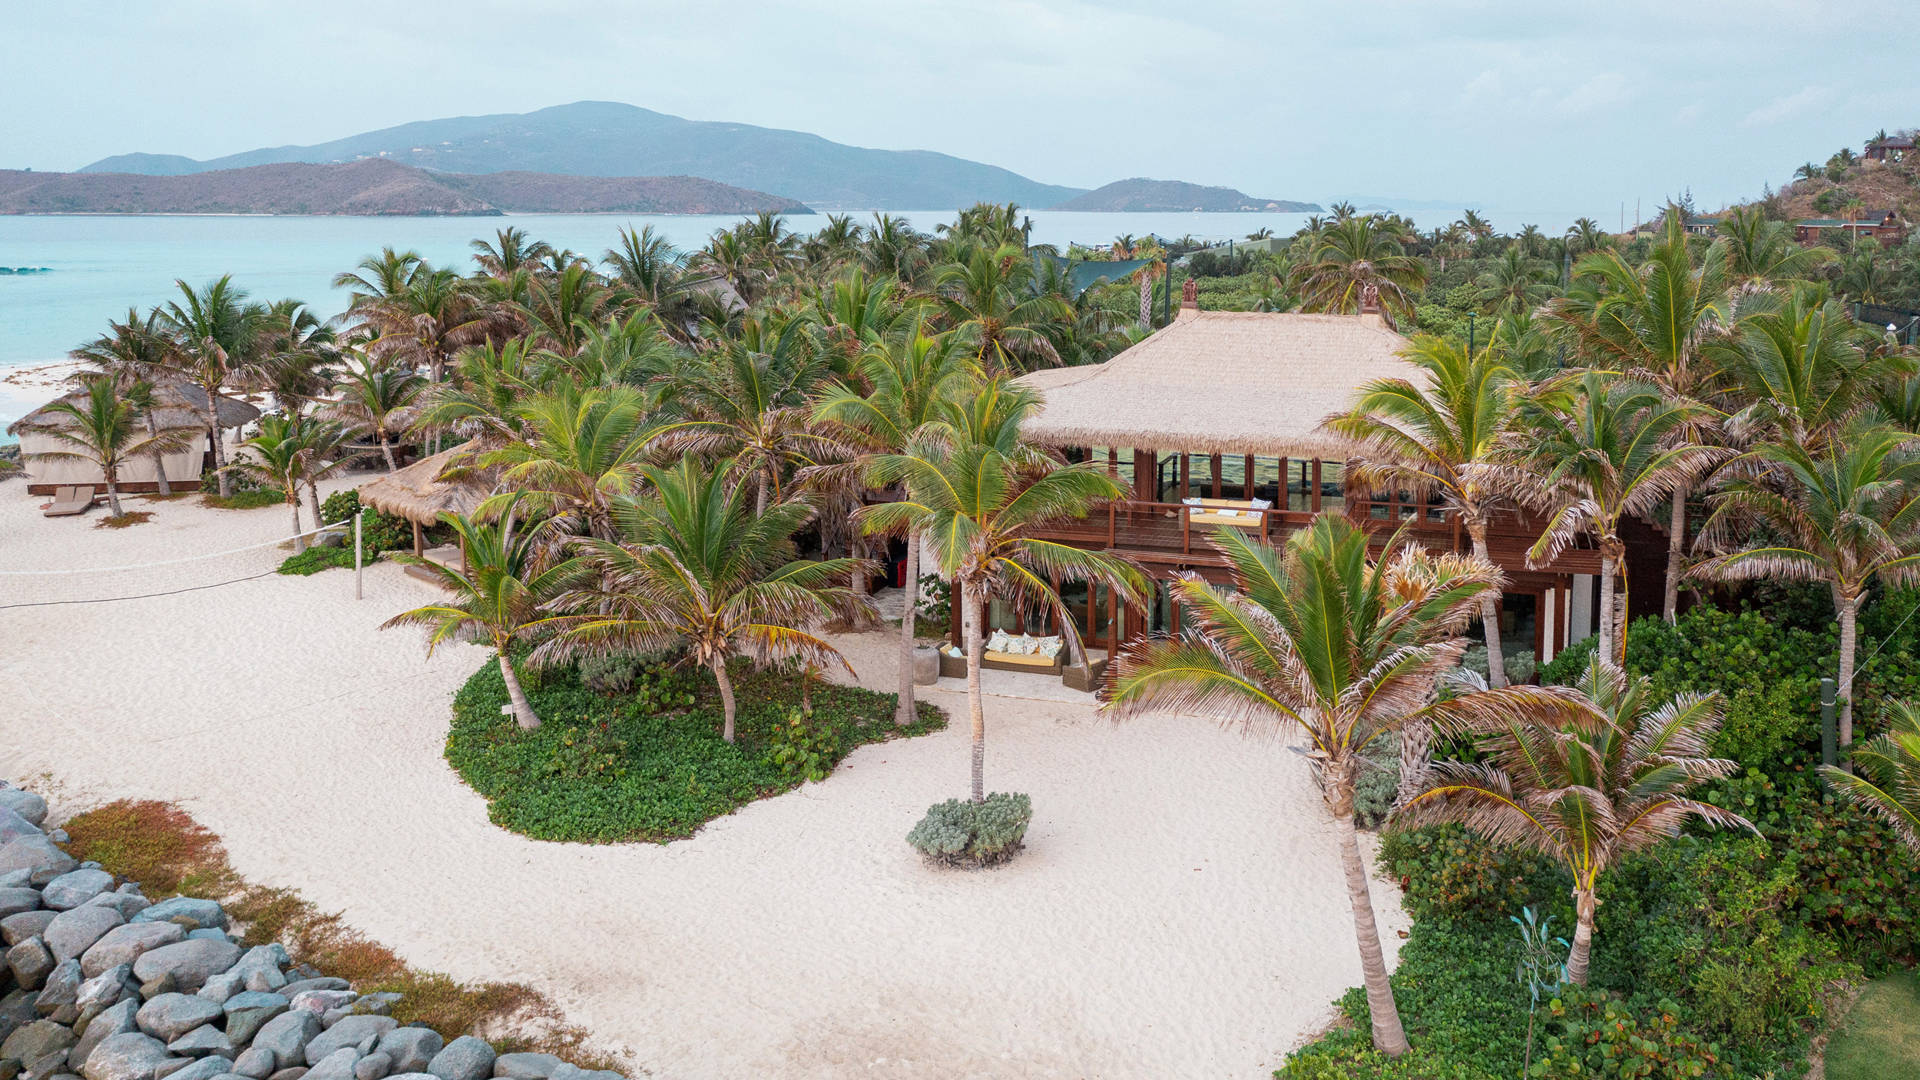 Πώς είναι η εμπειρία στο ιδιωτικό νησί του Richard Branson στην Καραϊβική